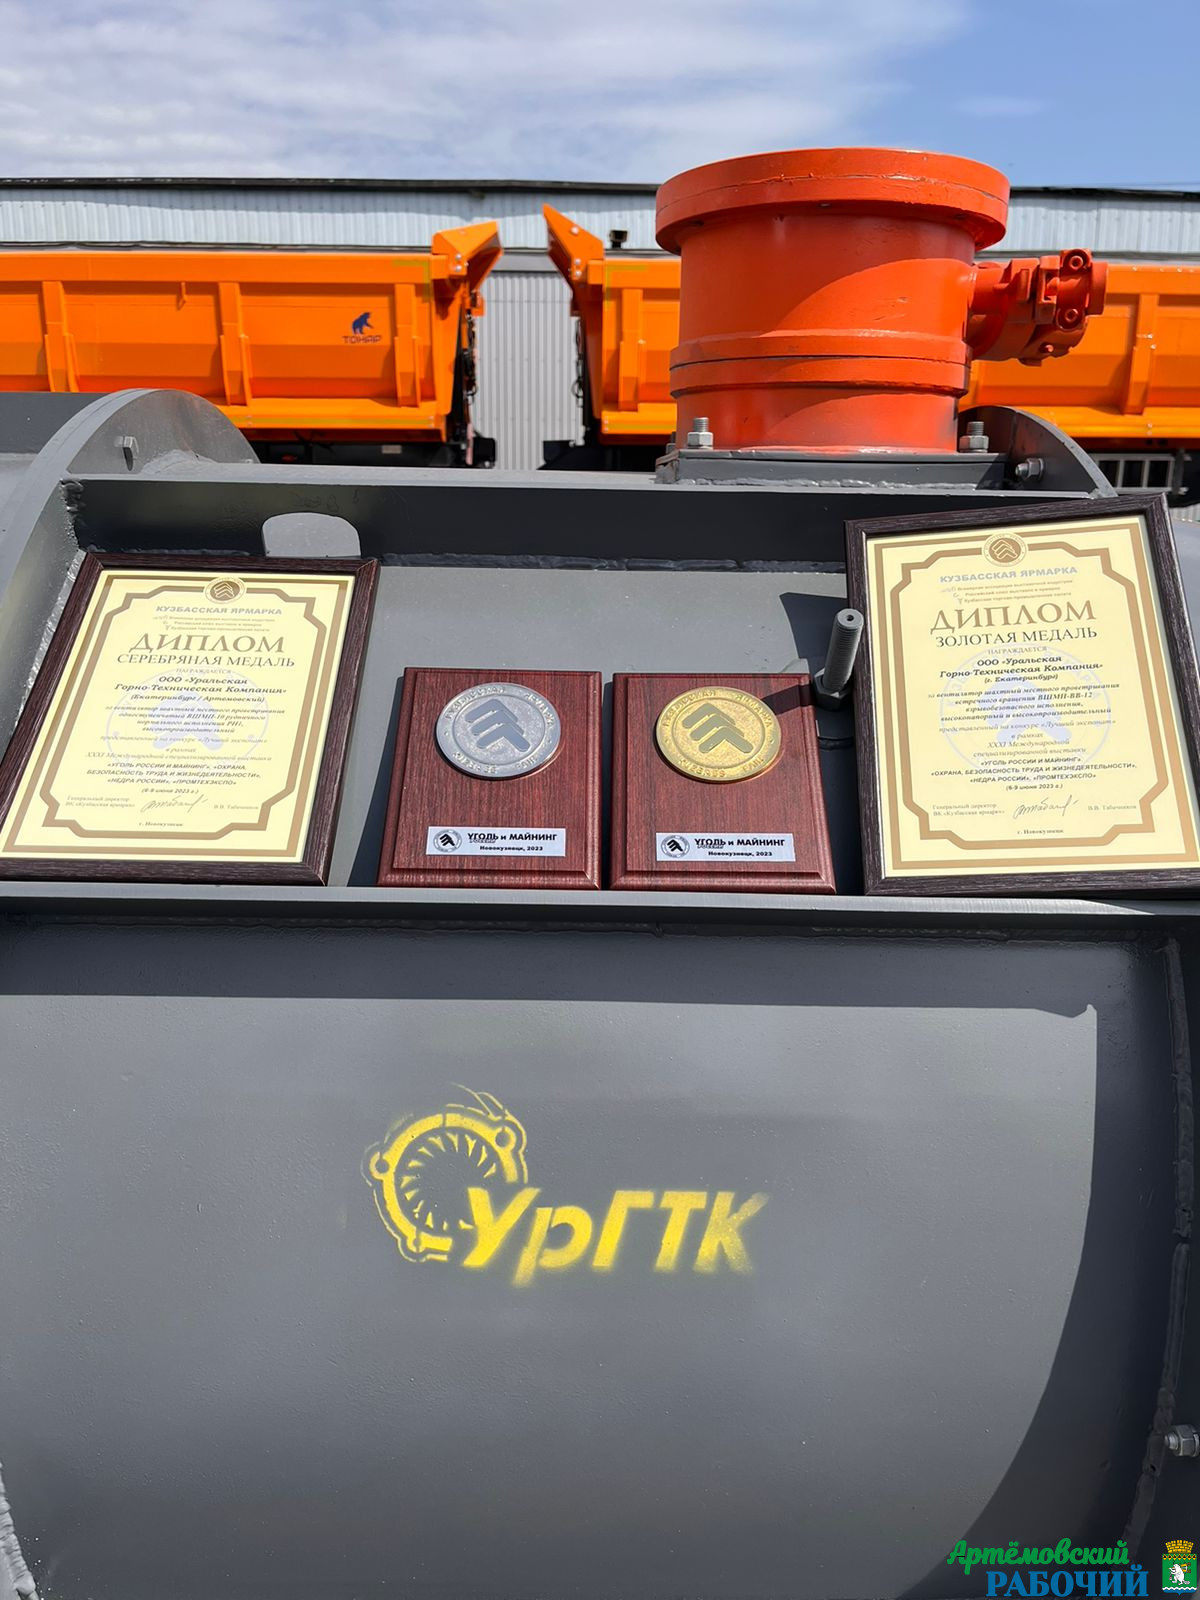 Шахтные вентиляторы от УрГТК завоевали золото и серебро на престижной Международной выставке